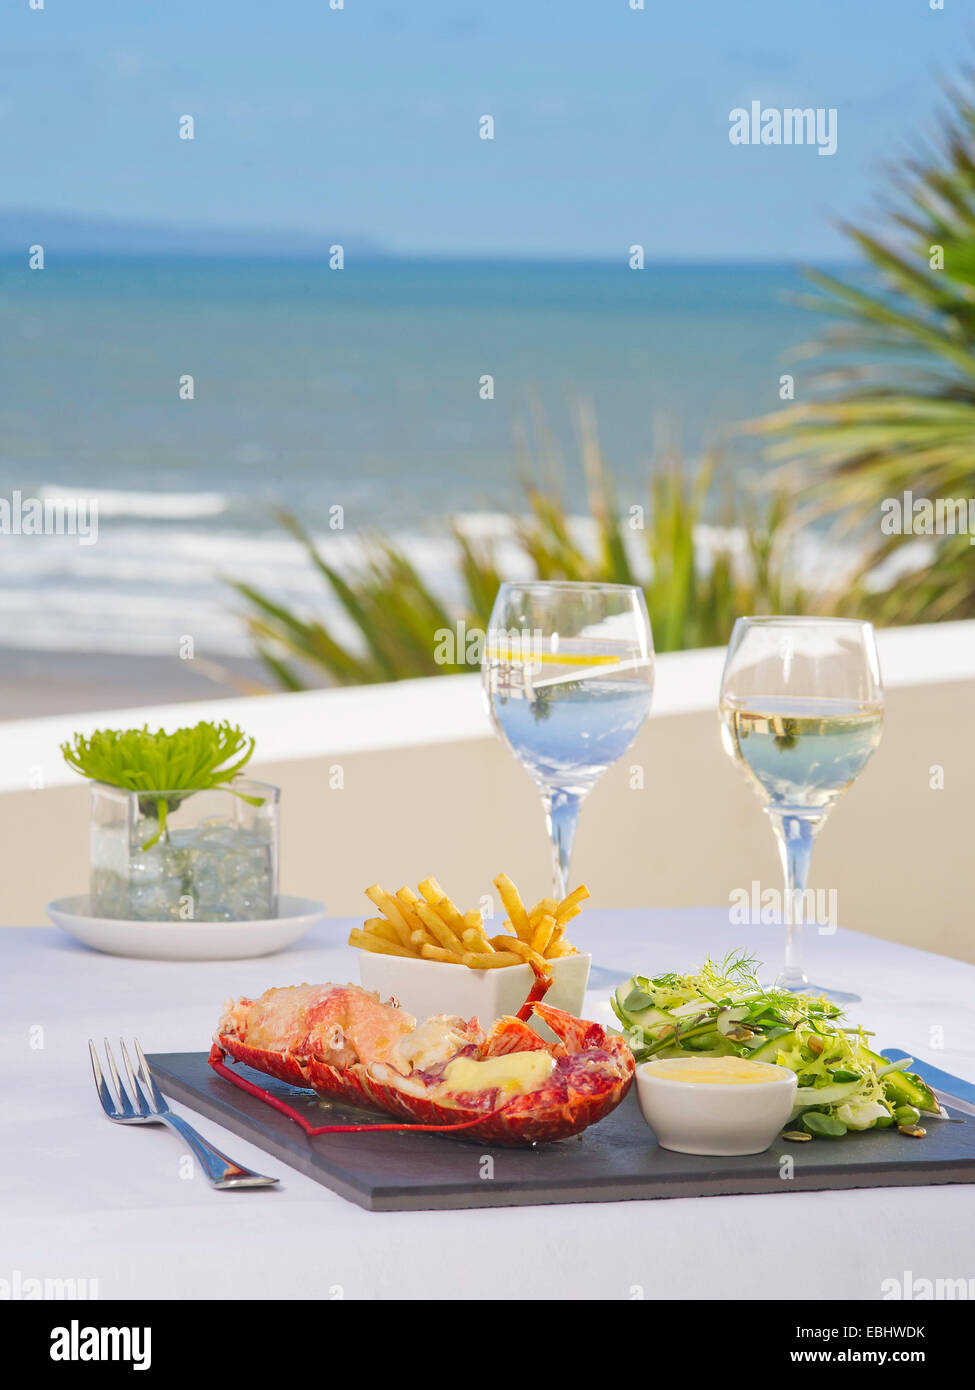 Le homard avec les frites sur une plaque avec la mer en arrière-plan. Banque D'Images